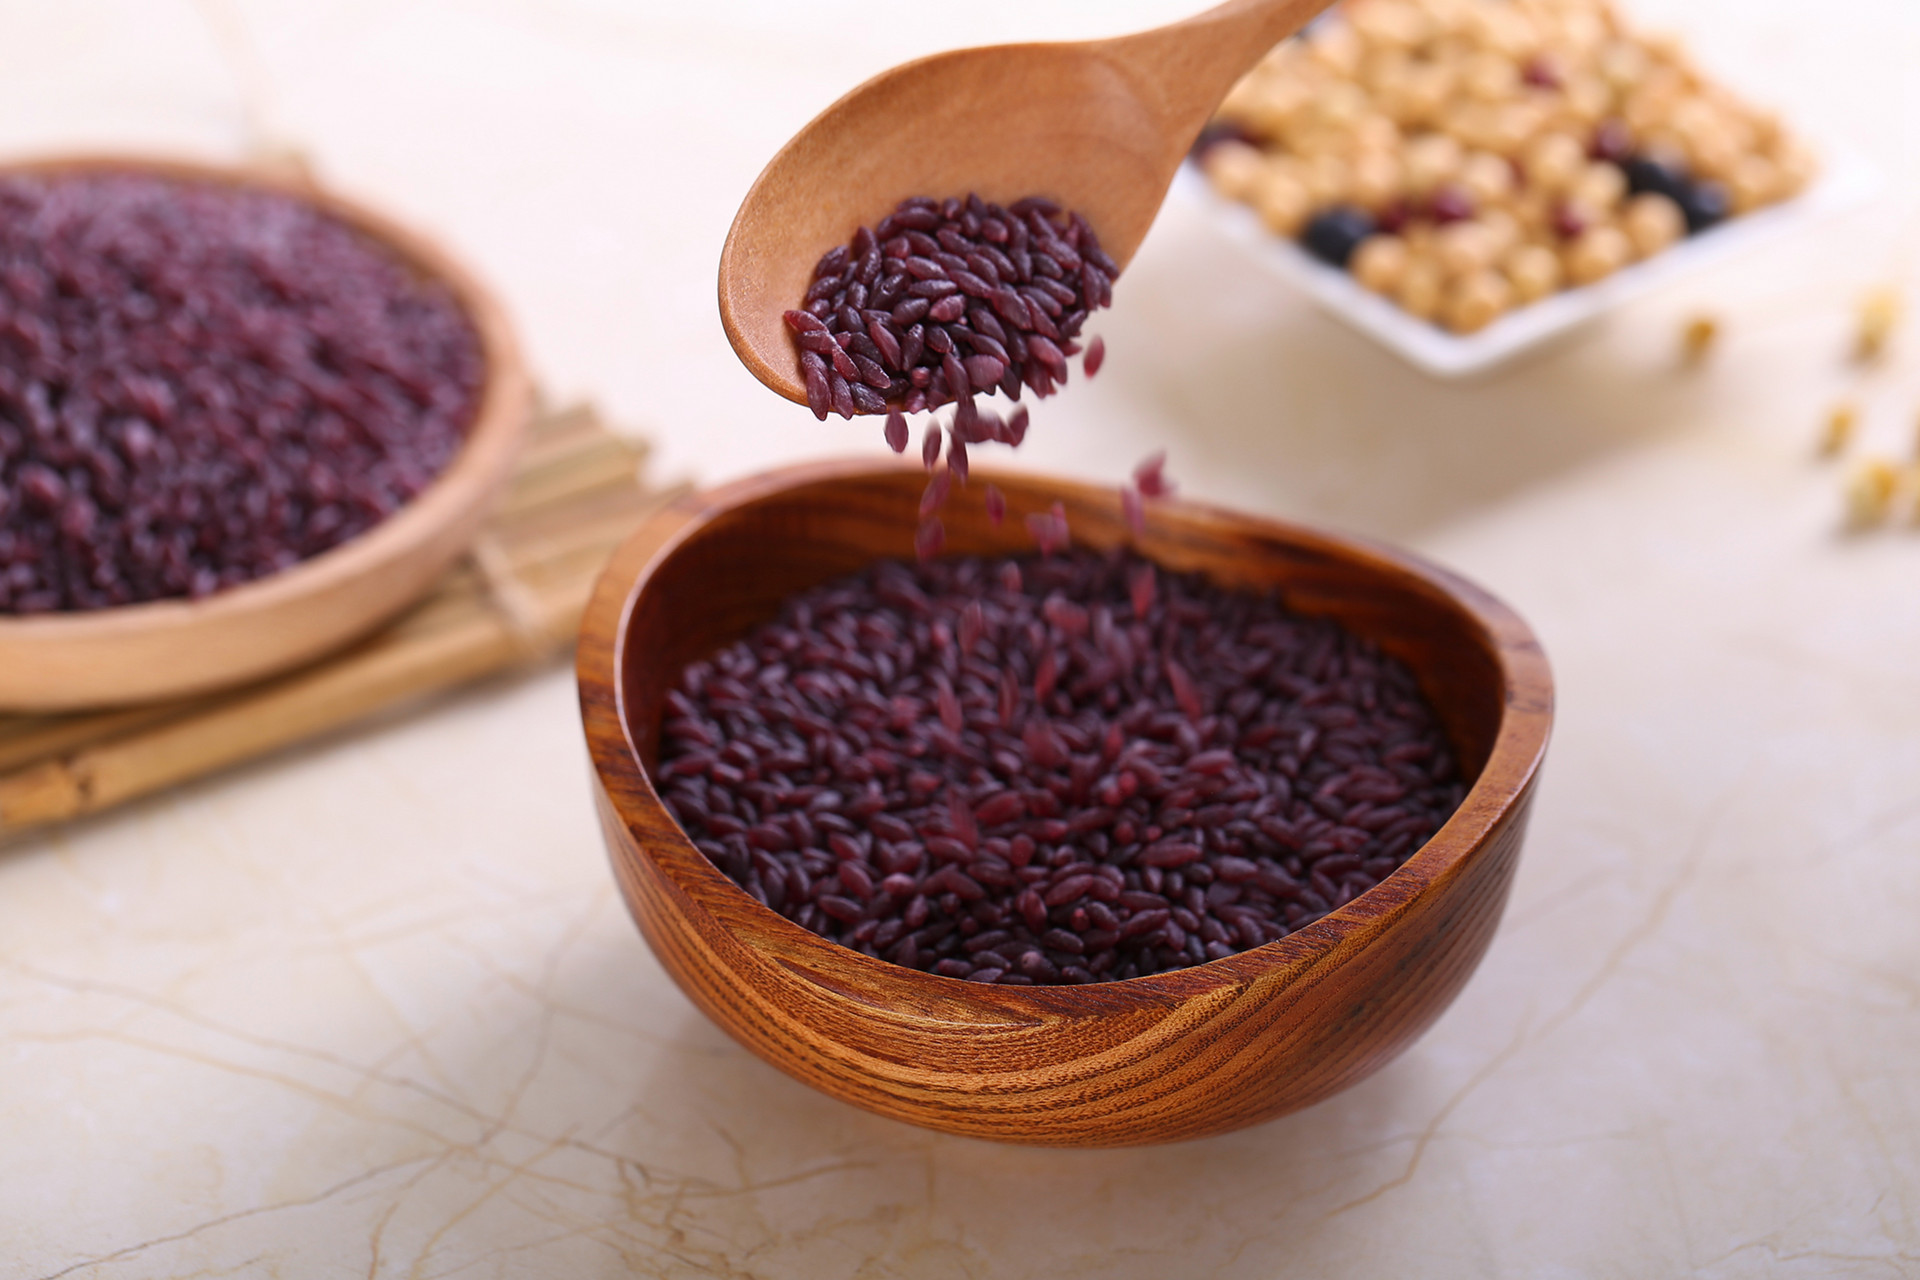 紫米是什么米是黑米吗